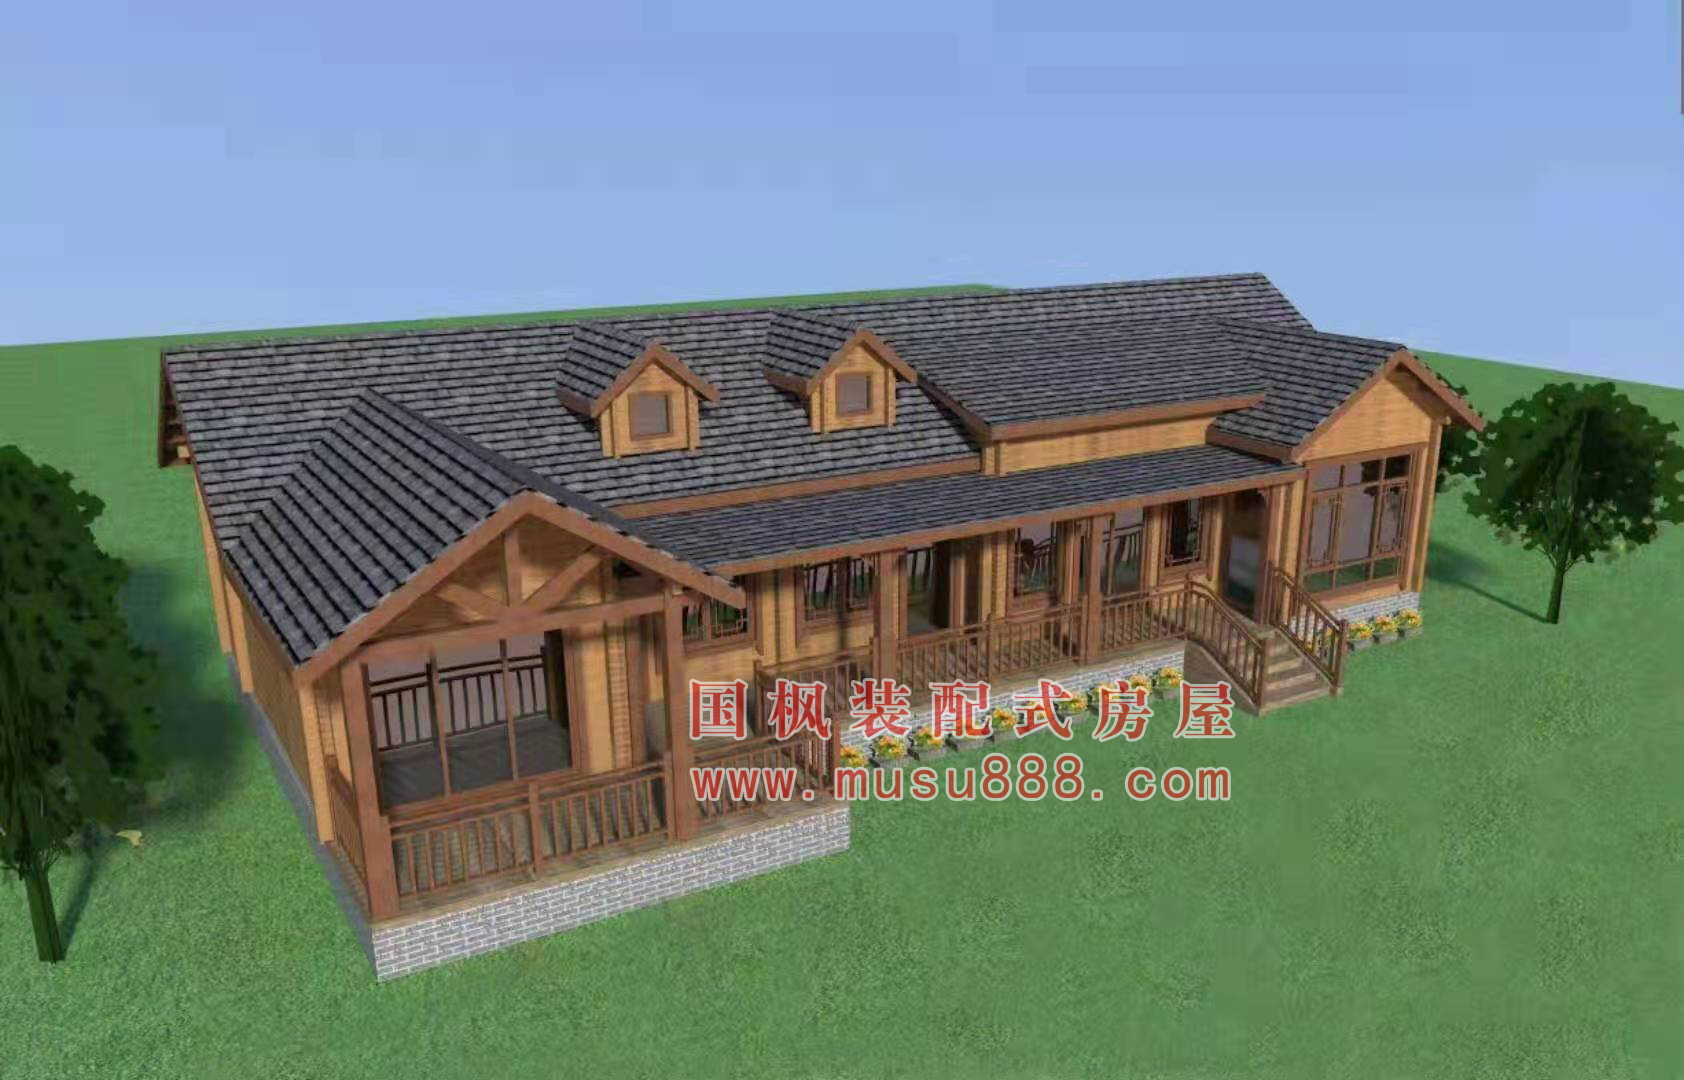 南京市木结构房屋施工工程 设计公司 哪家好